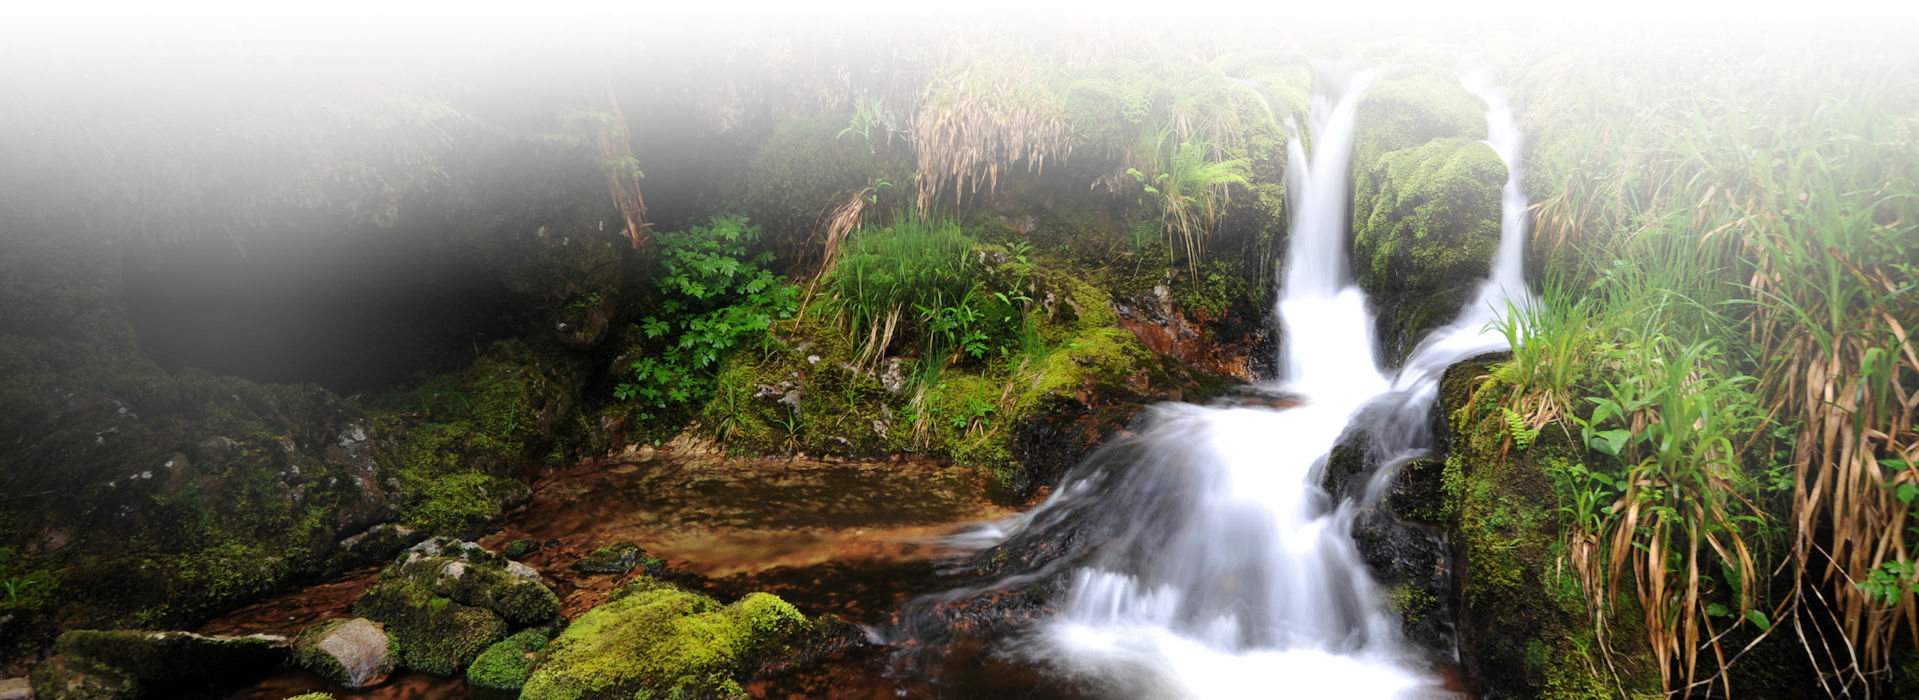 Das Bild zeigt einen kleinen Wasserfall eines Waldbachs. Am Ufer sattgrüne Pflanzen wie Farne und Moose und große Waldbäume.